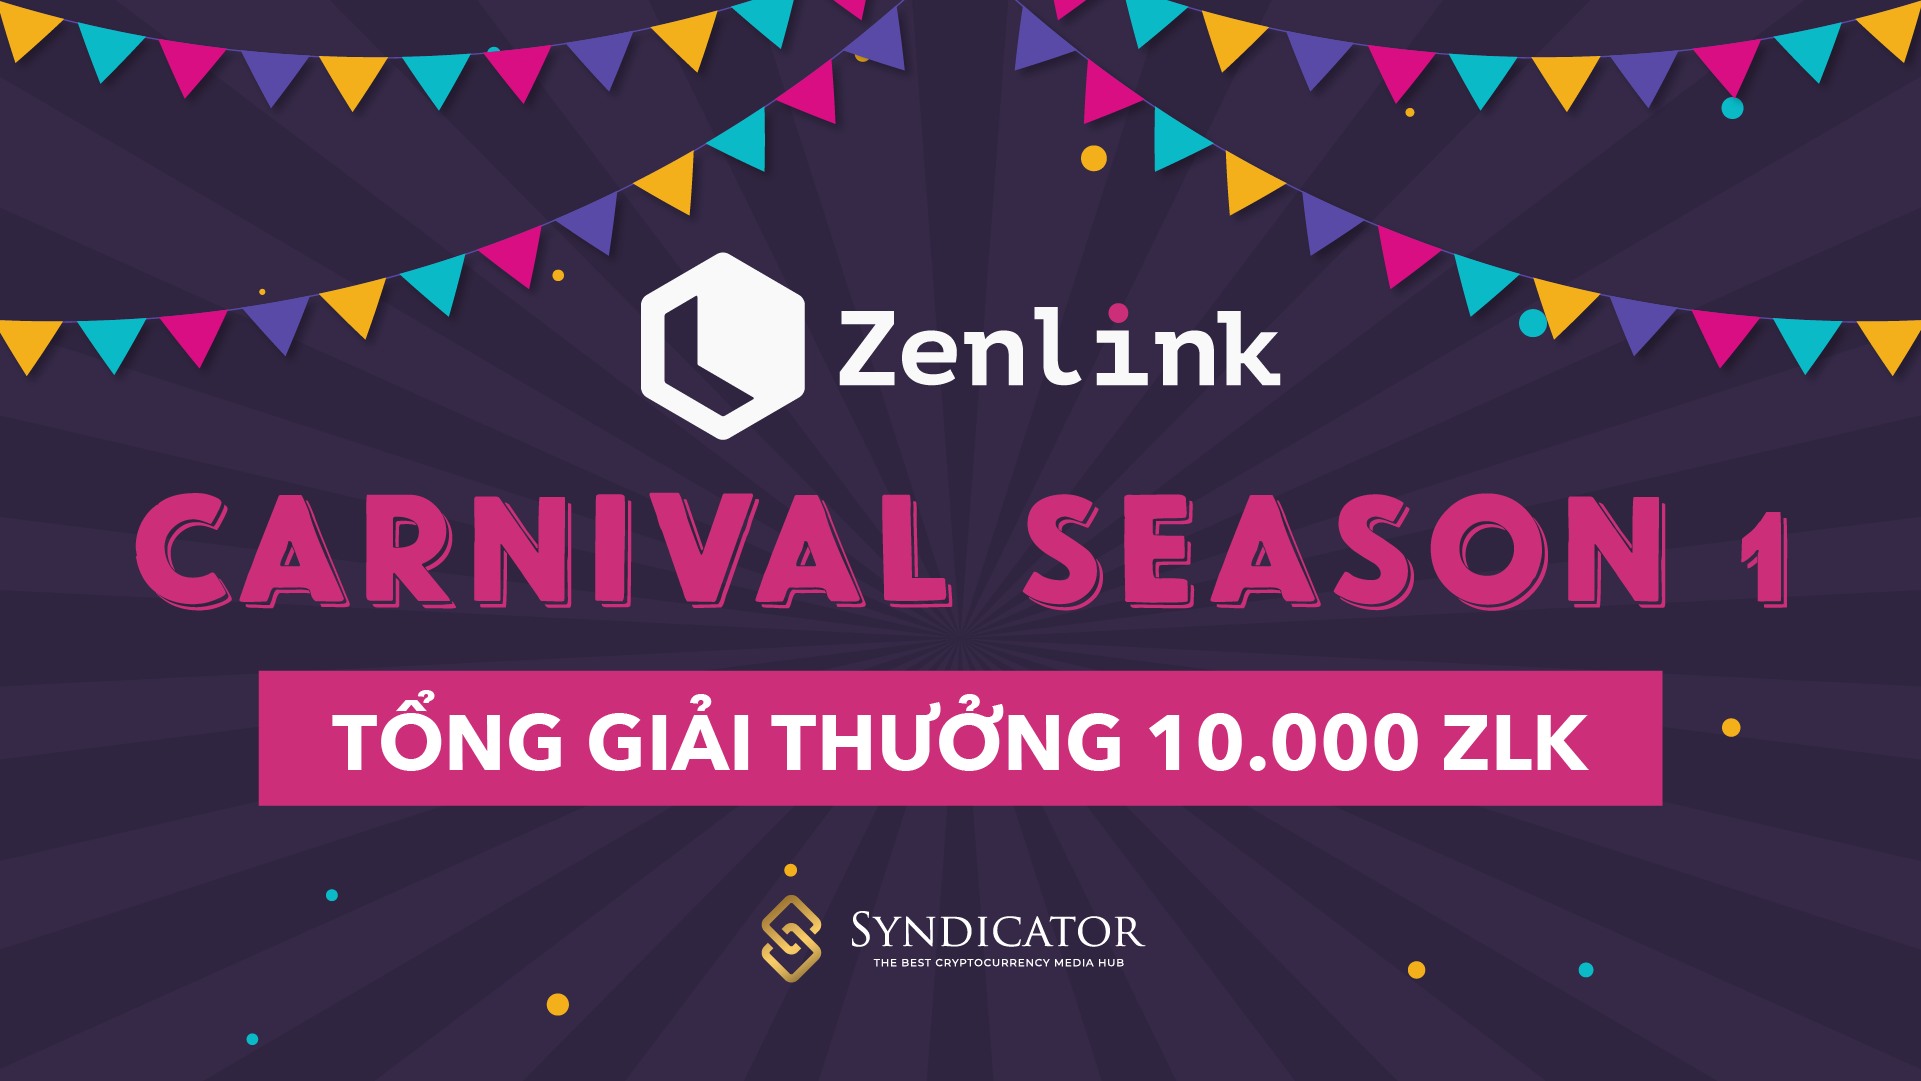 Sự kiện Carnival Season 1 của Zenlink với tổng giải thưởng 10.000 token ZLK